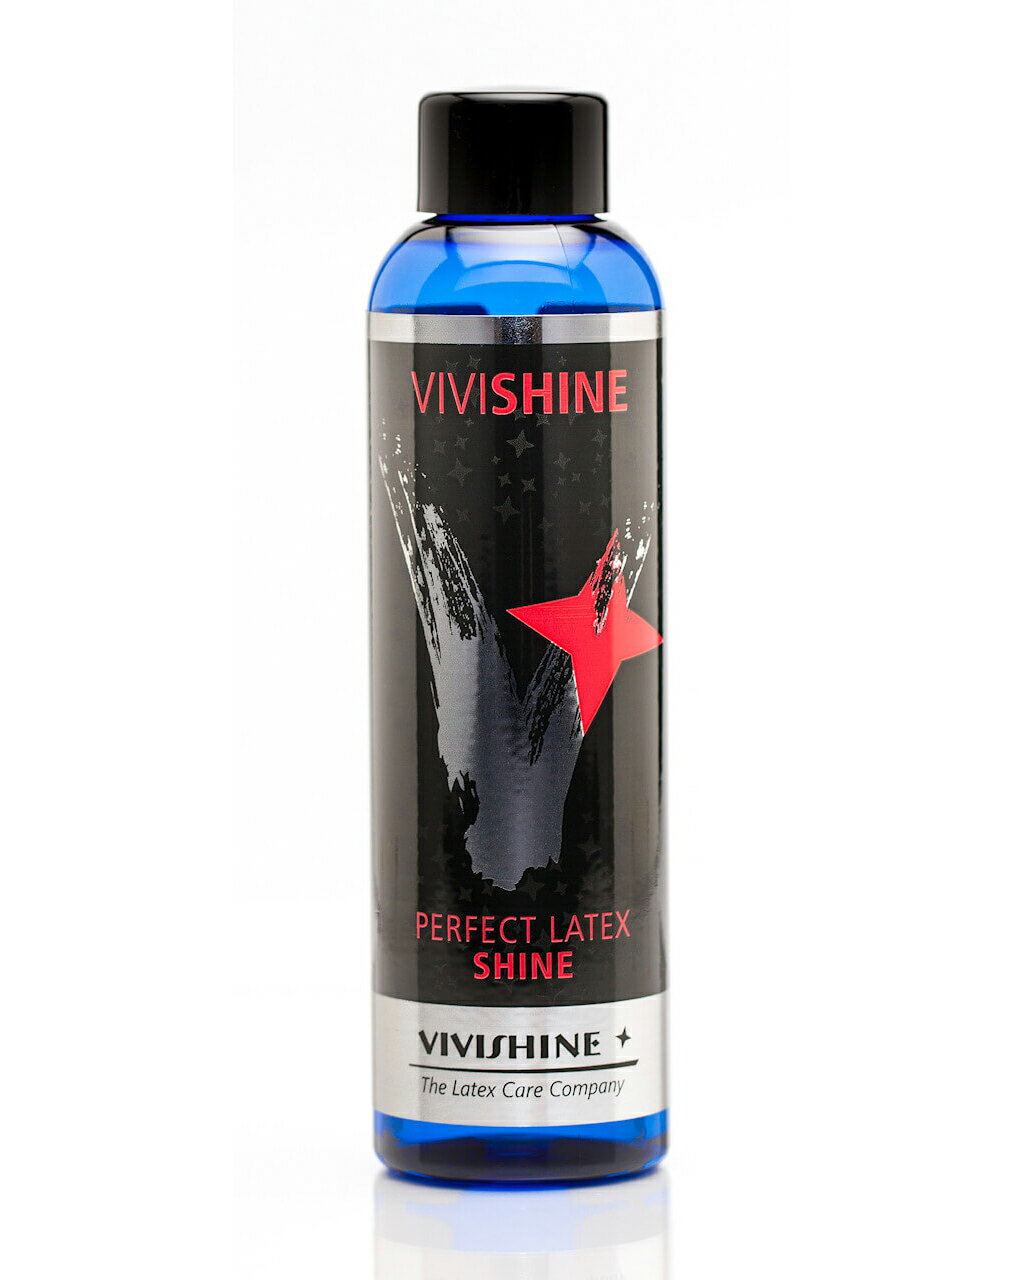 ドイツ老舗ラバーケア用品ブランド「VIVISHINE（ビビシャイン）」。古くからのラバー愛好者にはおなじみの往年のブランドです。 「VIVISHINE」はラバーウェア用光沢ローション。150ml。 ラバーウェア表面に鮮やかな光沢を与える光沢保護剤です。 内容量：150ml 容器サイズ：高さ 約15cm ドイツ製 【使用方法】 VIVISHINEをそのままラバーウェアに塗り込んでも効果を発揮しますが、洗濯後に使っていただくと少量で効果が得られます。 1．洗面器で石鹸（できるだけ香料等の化学材料の少ない石鹸 ）をぬるま湯でよく泡立ててラバーを手洗いします。 2．充分にすすいで石鹸を落とします。 3．洗面器のぬるま湯(2～3リットル）に対して、小スプーン1杯程度のVIVISHINEを入れて、ラバー全体にいきわたるようにします。（漬け置きの必要はありません） 　キャットスーツなどの大きな衣装の場合は、バスタブに少しぬるま湯を張って、小スプーン2、 3杯のVIVISHINEを入れます。 4．濡れたままの衣装をハンガーにかけて、陰干しします。 　乾くまでの過程で水滴ムラがでますが完全に乾くと消えます。 　金属パーツについては水分をよく取って完全に乾かしてください。 5．ラバーが乾いたら、ハンガーか畳んでビニール袋で保管します。 ※携帯時、キャップが緩み液体が漏れる場合があります。チャック付きビニール袋等に別途入れて携帯されることをおすすめします。 【注意事項】お使いのモニターの発色具合によって、実際のものと色が異なる場合がございます。